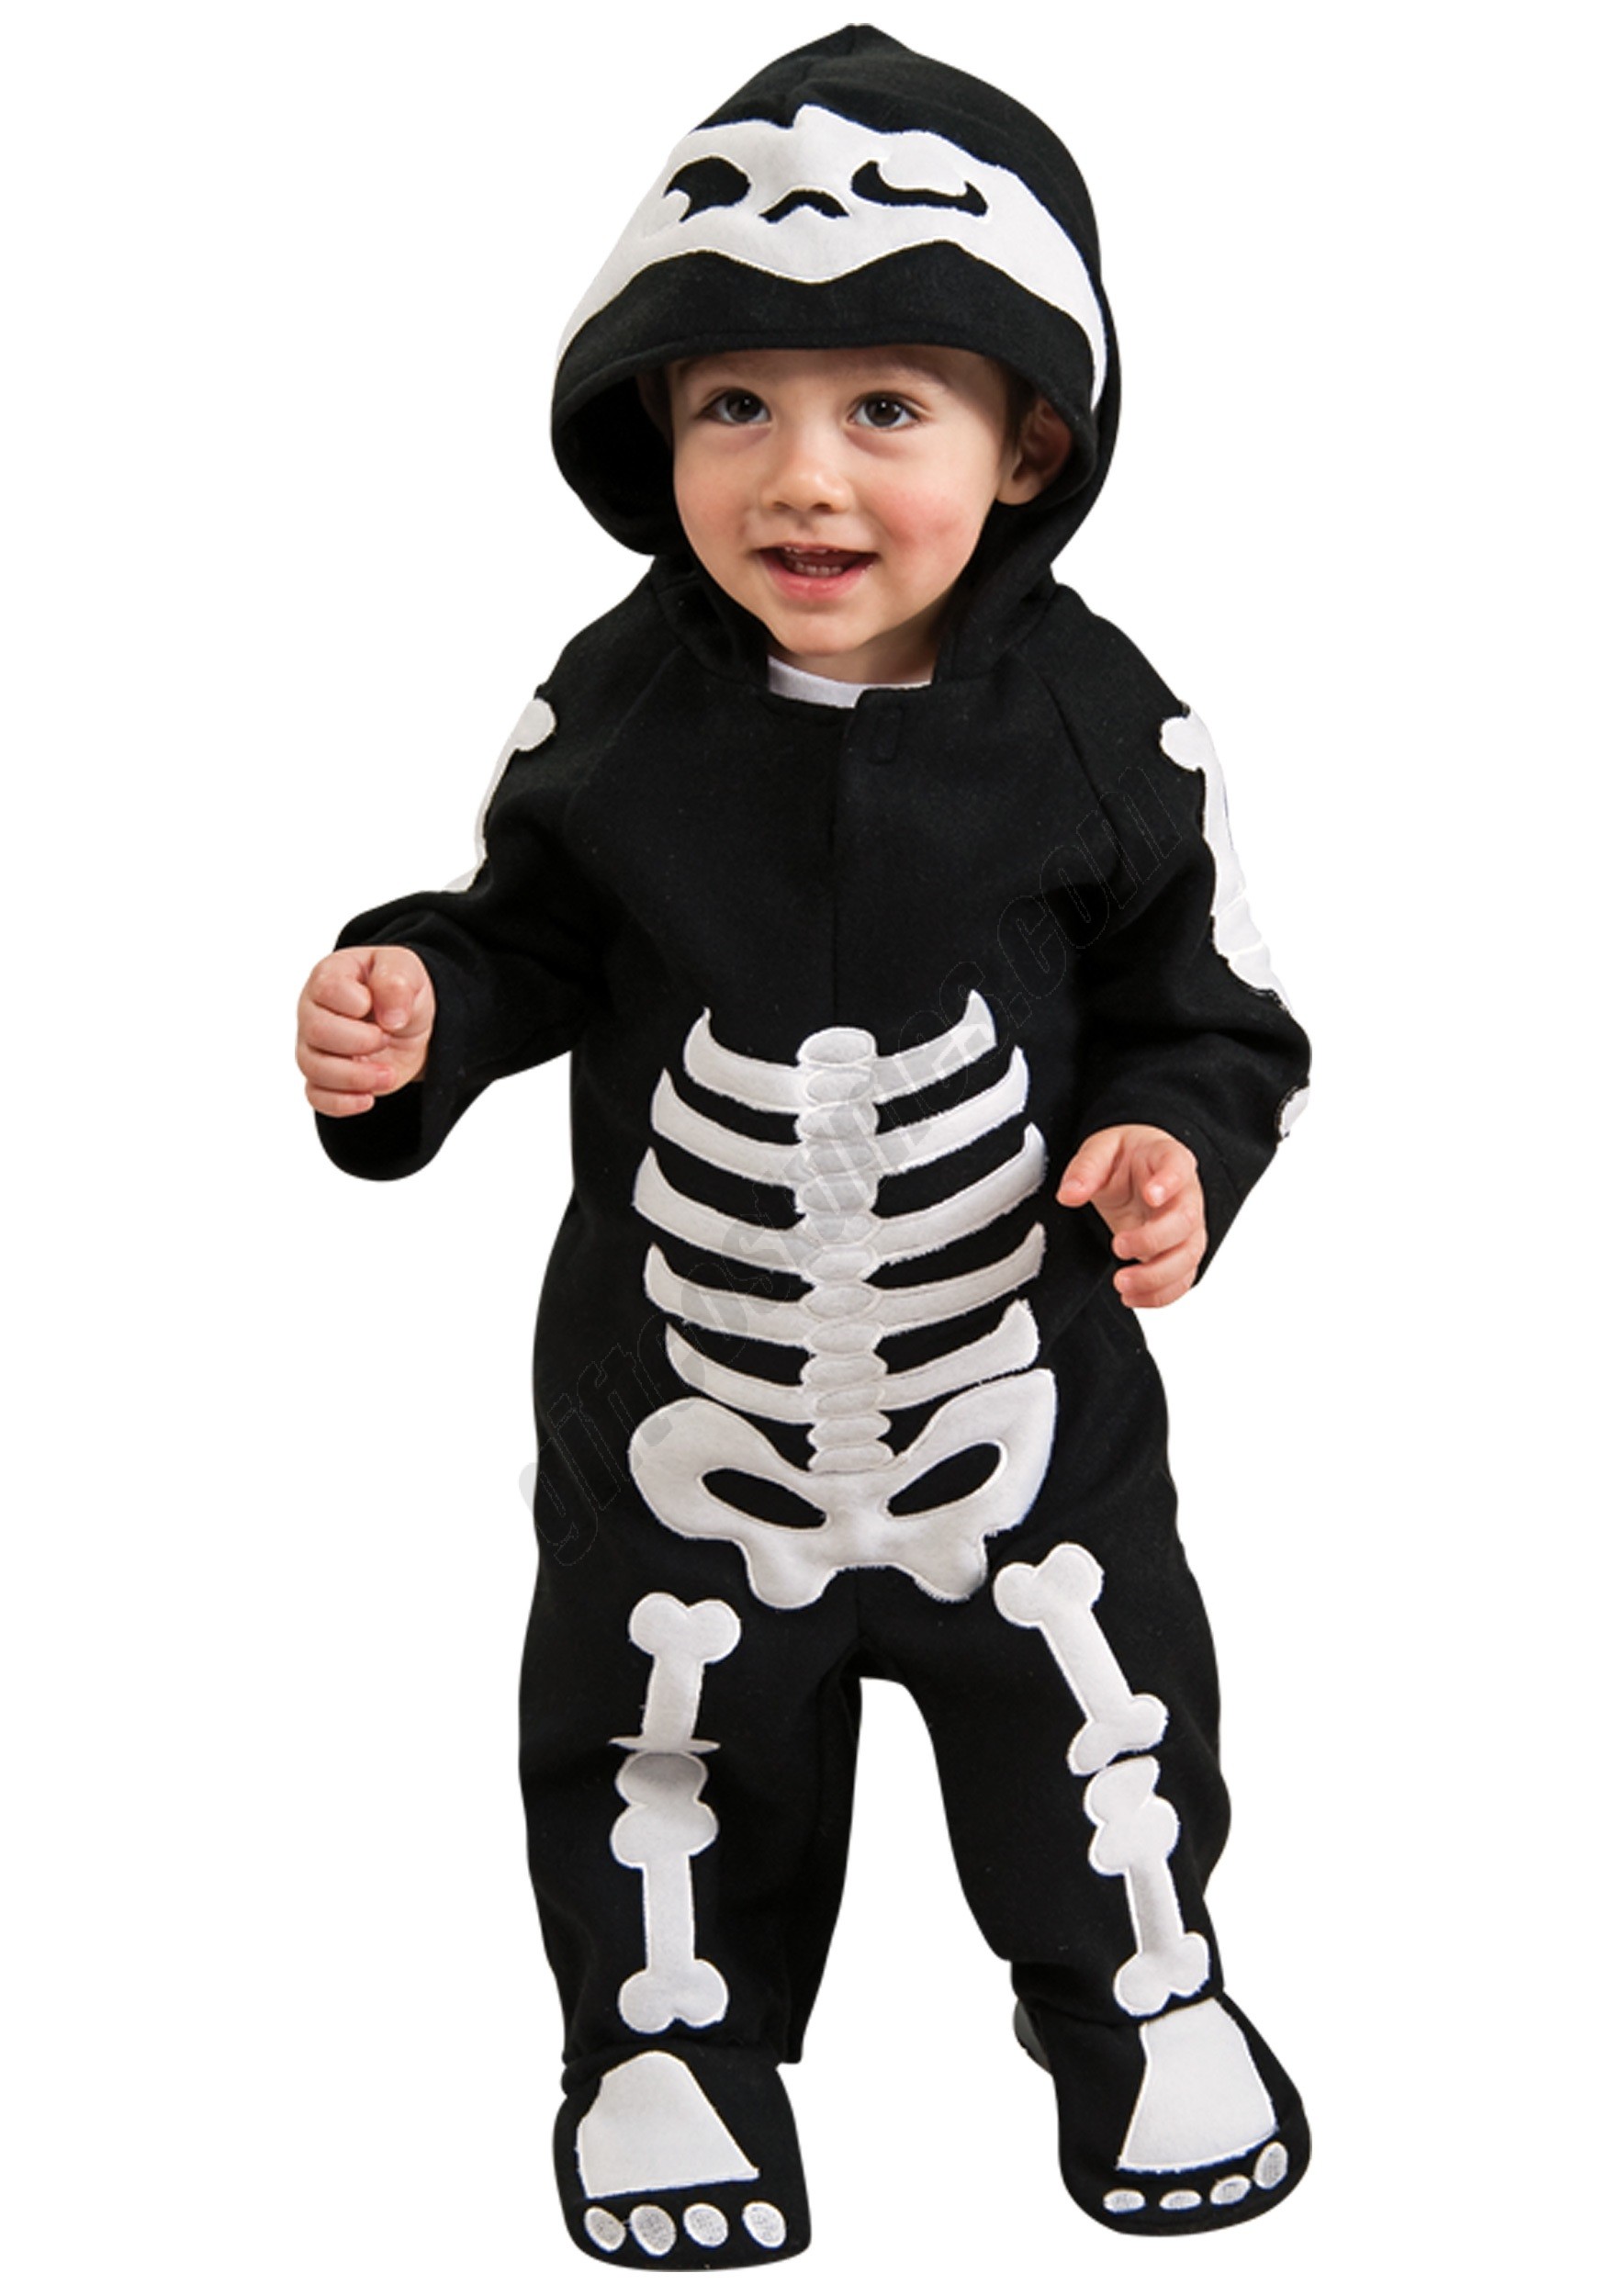 Infant / Toddler Skeleton Costume Promotions - Infant / Toddler Skeleton Costume Promotions